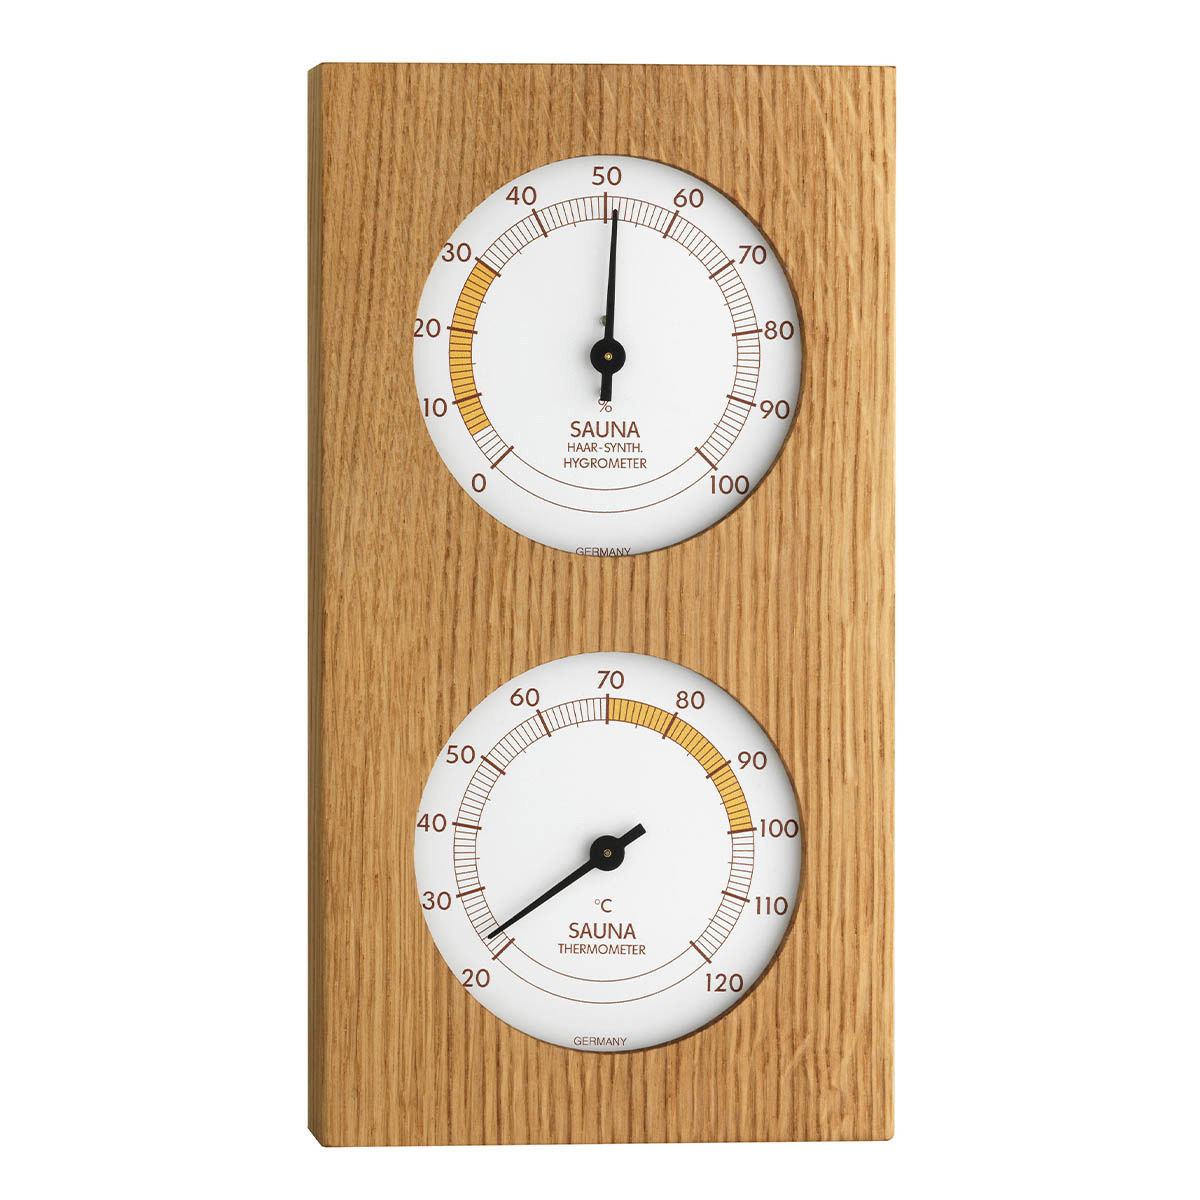 40-1052-01-analoges-sauna-thermo-hygrometer-mit-eichenrahmen-1200x1200px.jpg